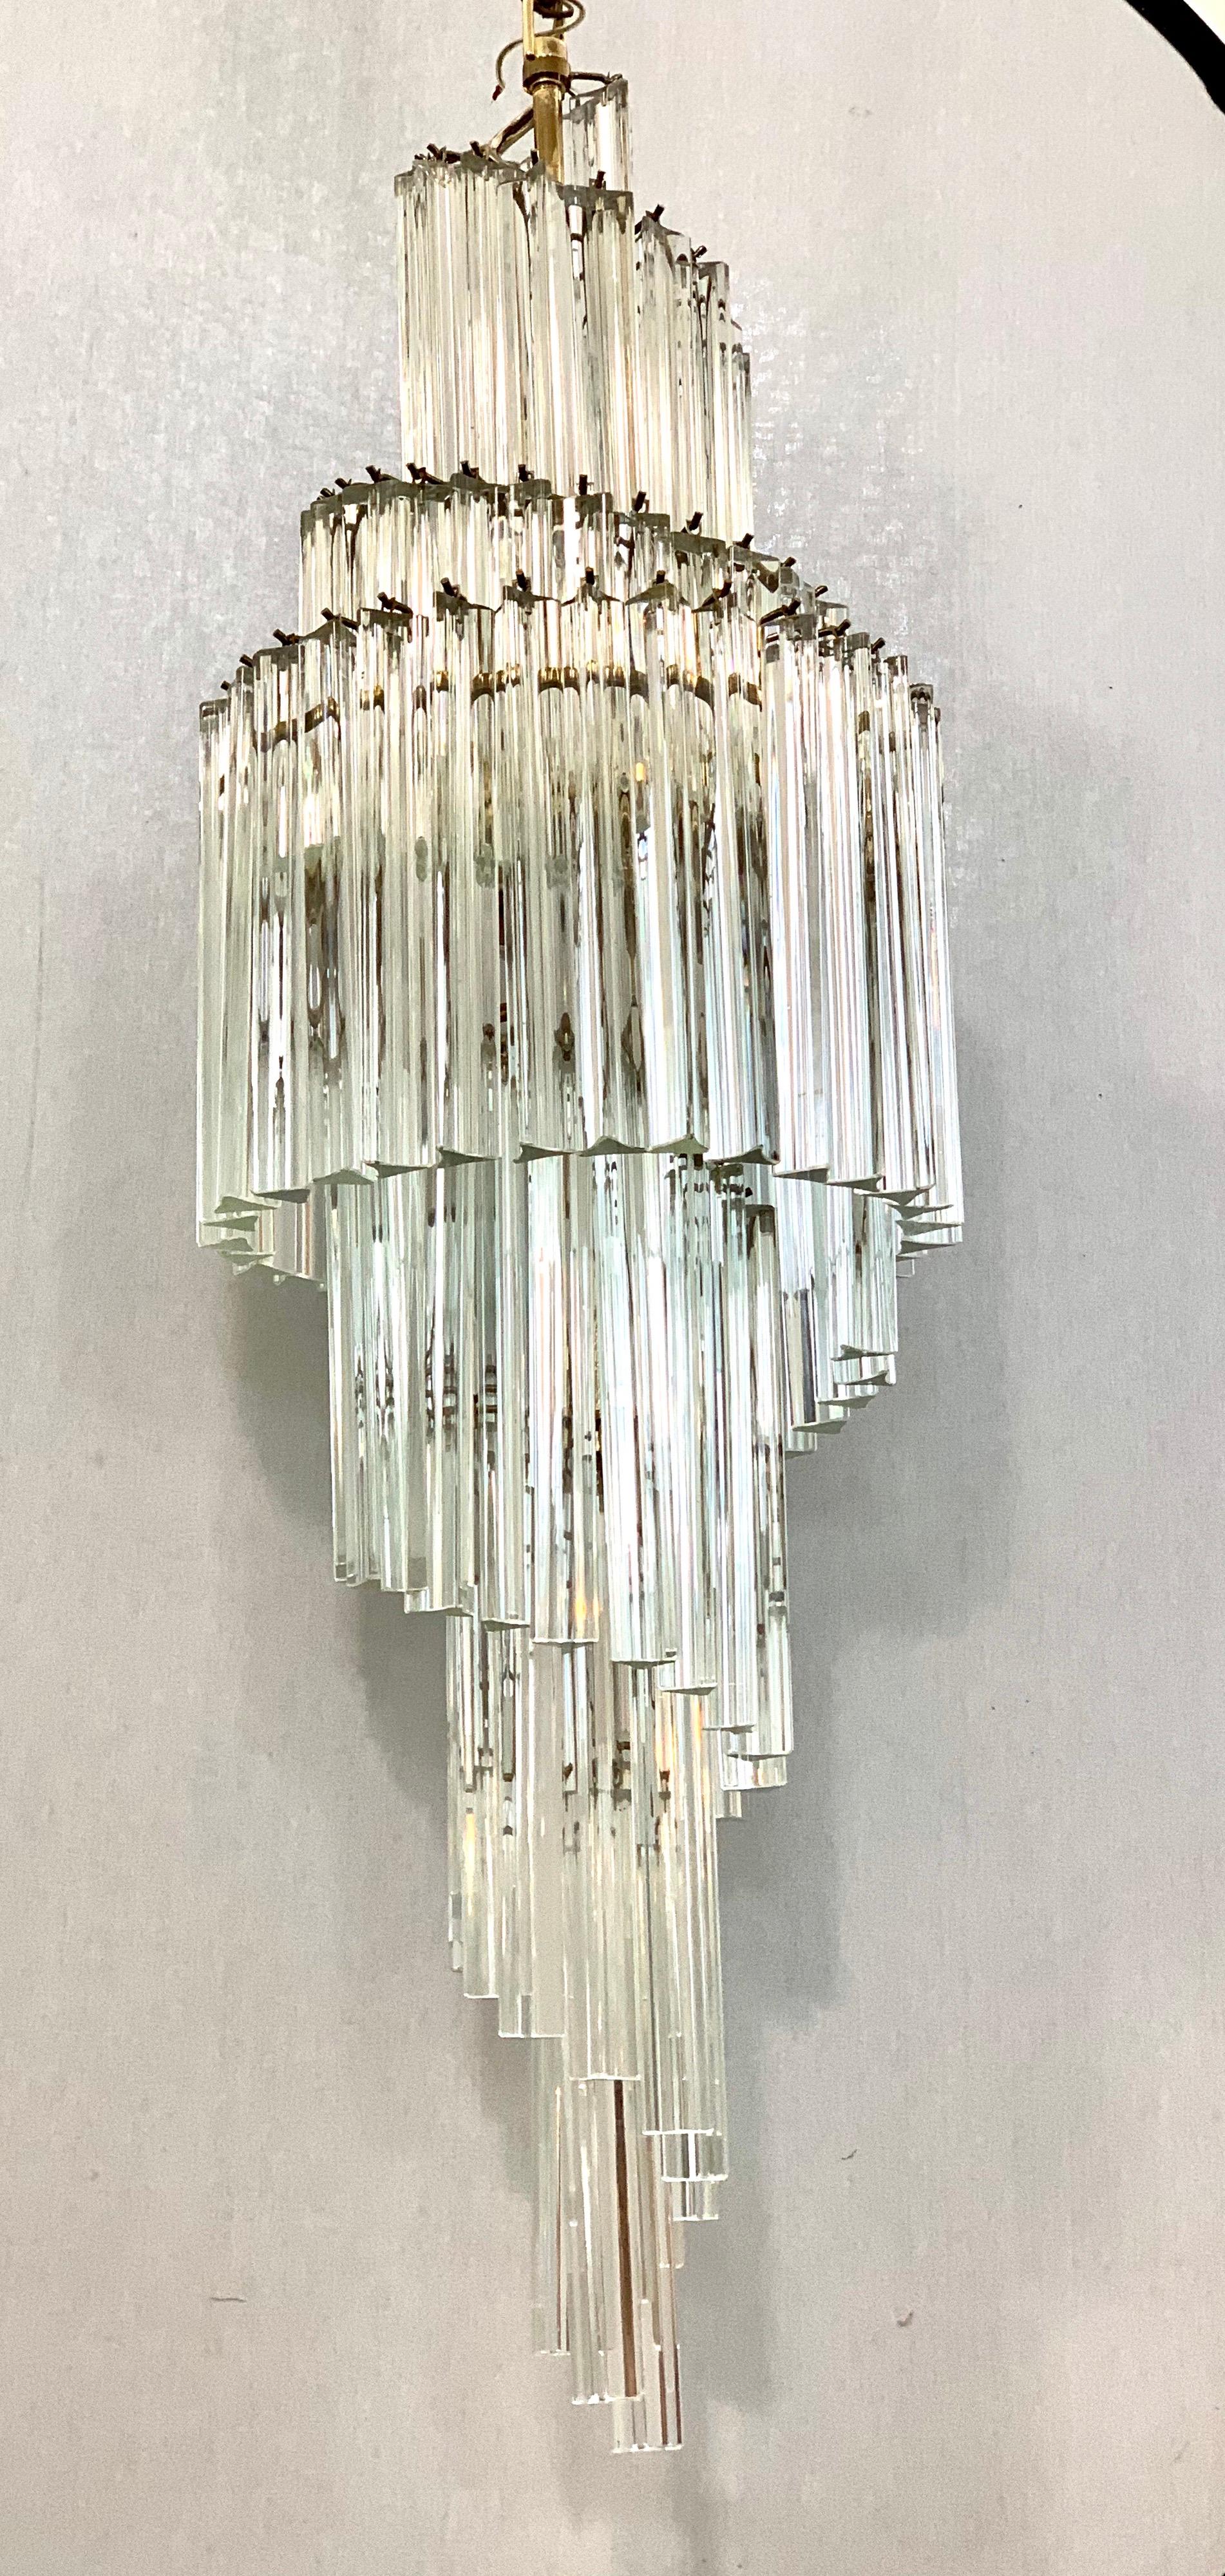 Prächtiger, kaskadenförmiger Wasserfall-Kronleuchter aus Camer-Glas. Ikonische Beleuchtung aus der Mitte des Jahrhunderts.
Jedes schwere Camer-Glasprisma hängt an einem eigenen Haken an der Stahlkonstruktion
rahmen. Für die USA verkabelt und in